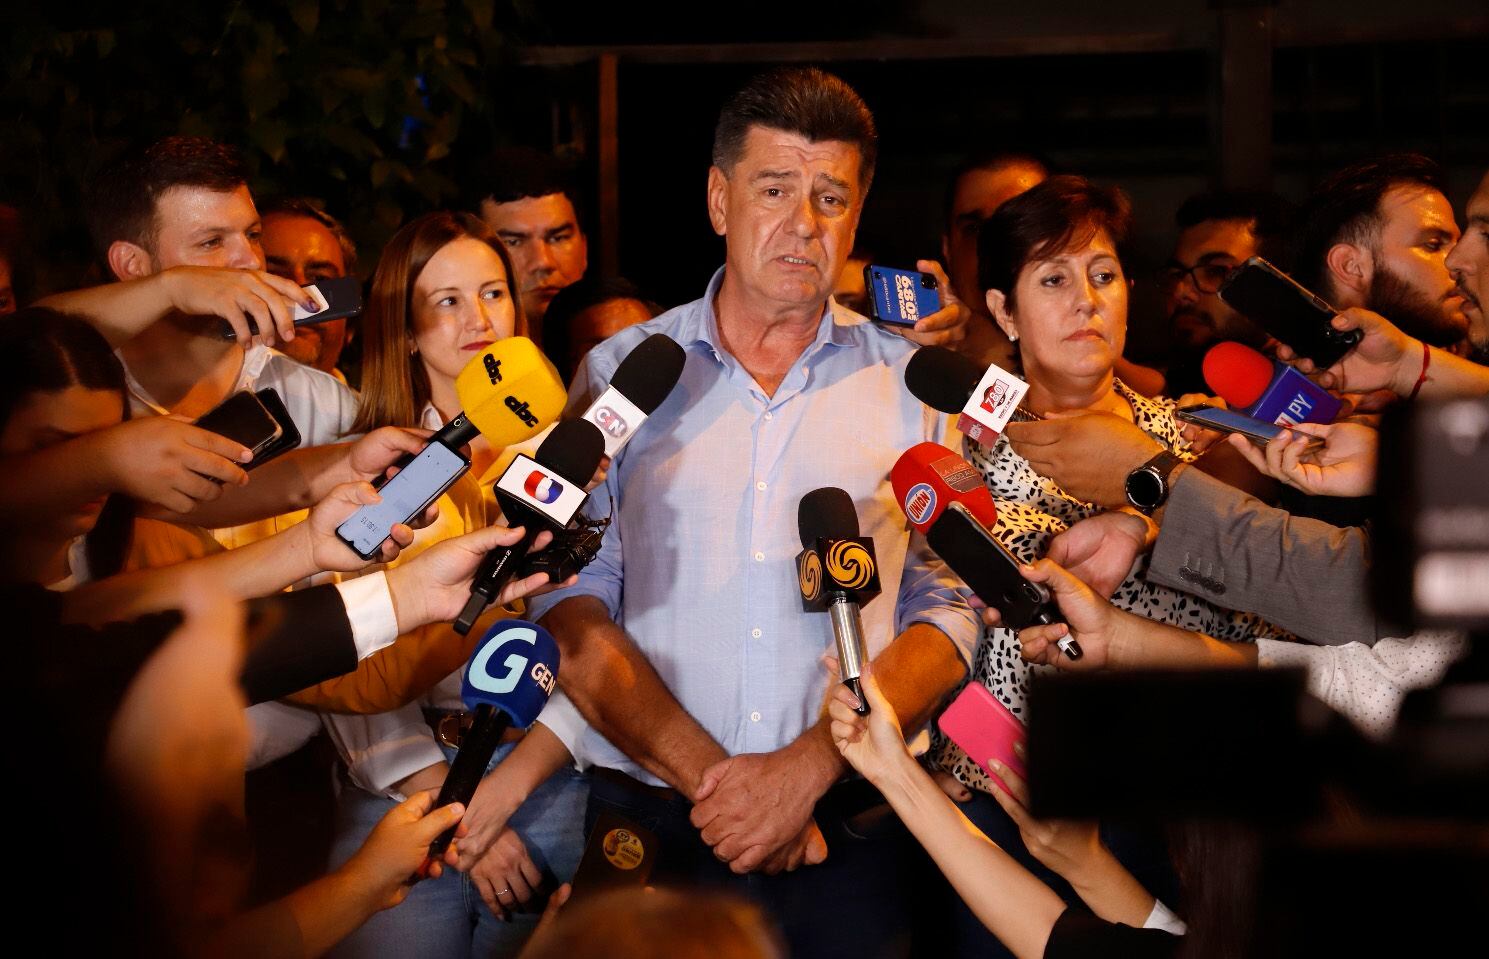 El presidenciable Efraín Alegre junto con su dupla Soledad Núñez (izq.) y su esposa Mirian Irún, admitió anoche su derrota sin aceptar preguntas y culpando a la división en la oposición.